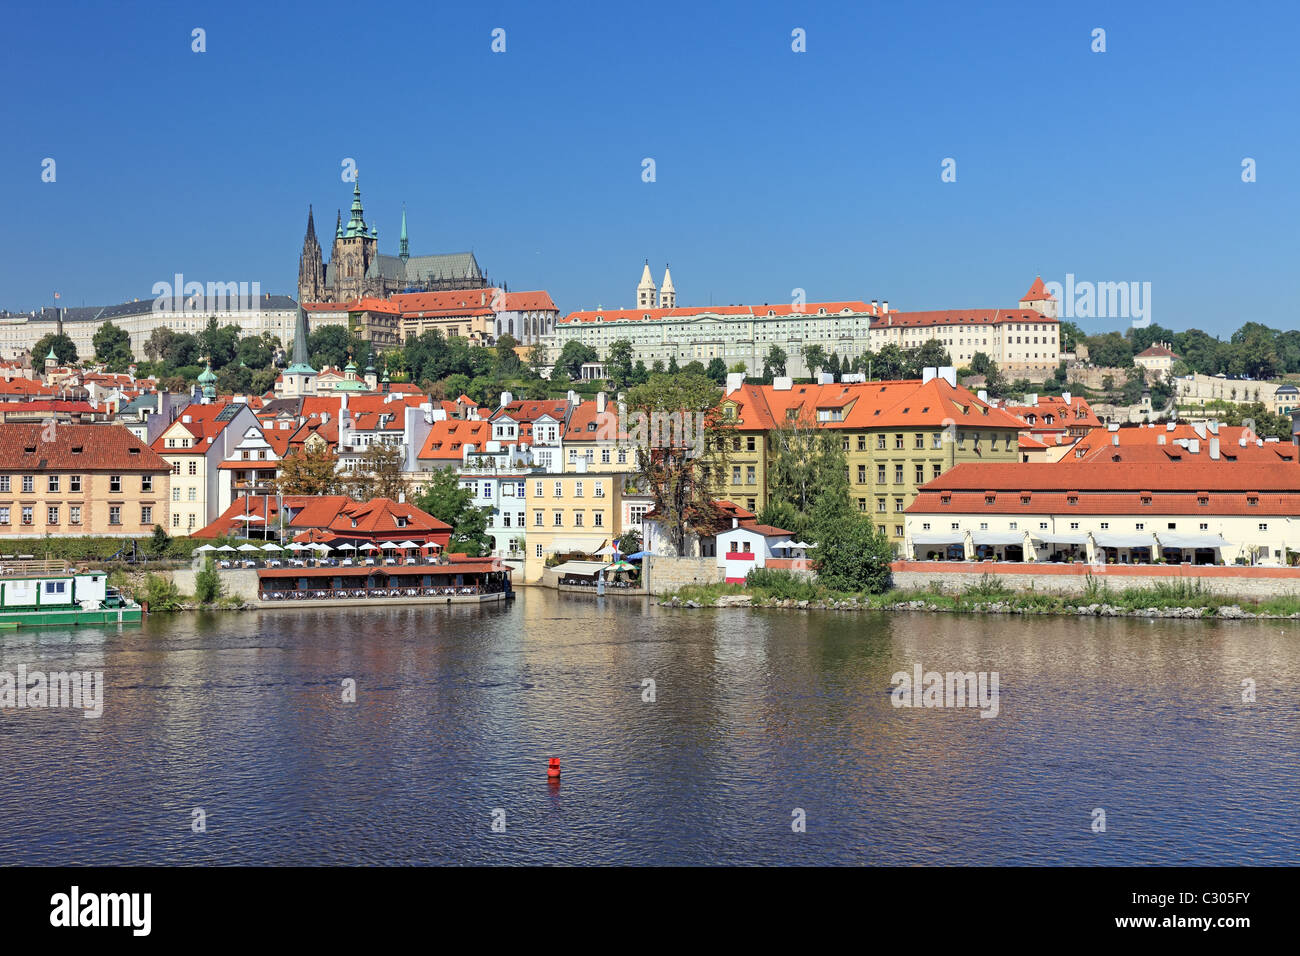 Schöne Stadtbild des alten Prag, Hauptstadt der Tschechischen Republik. Stockfoto